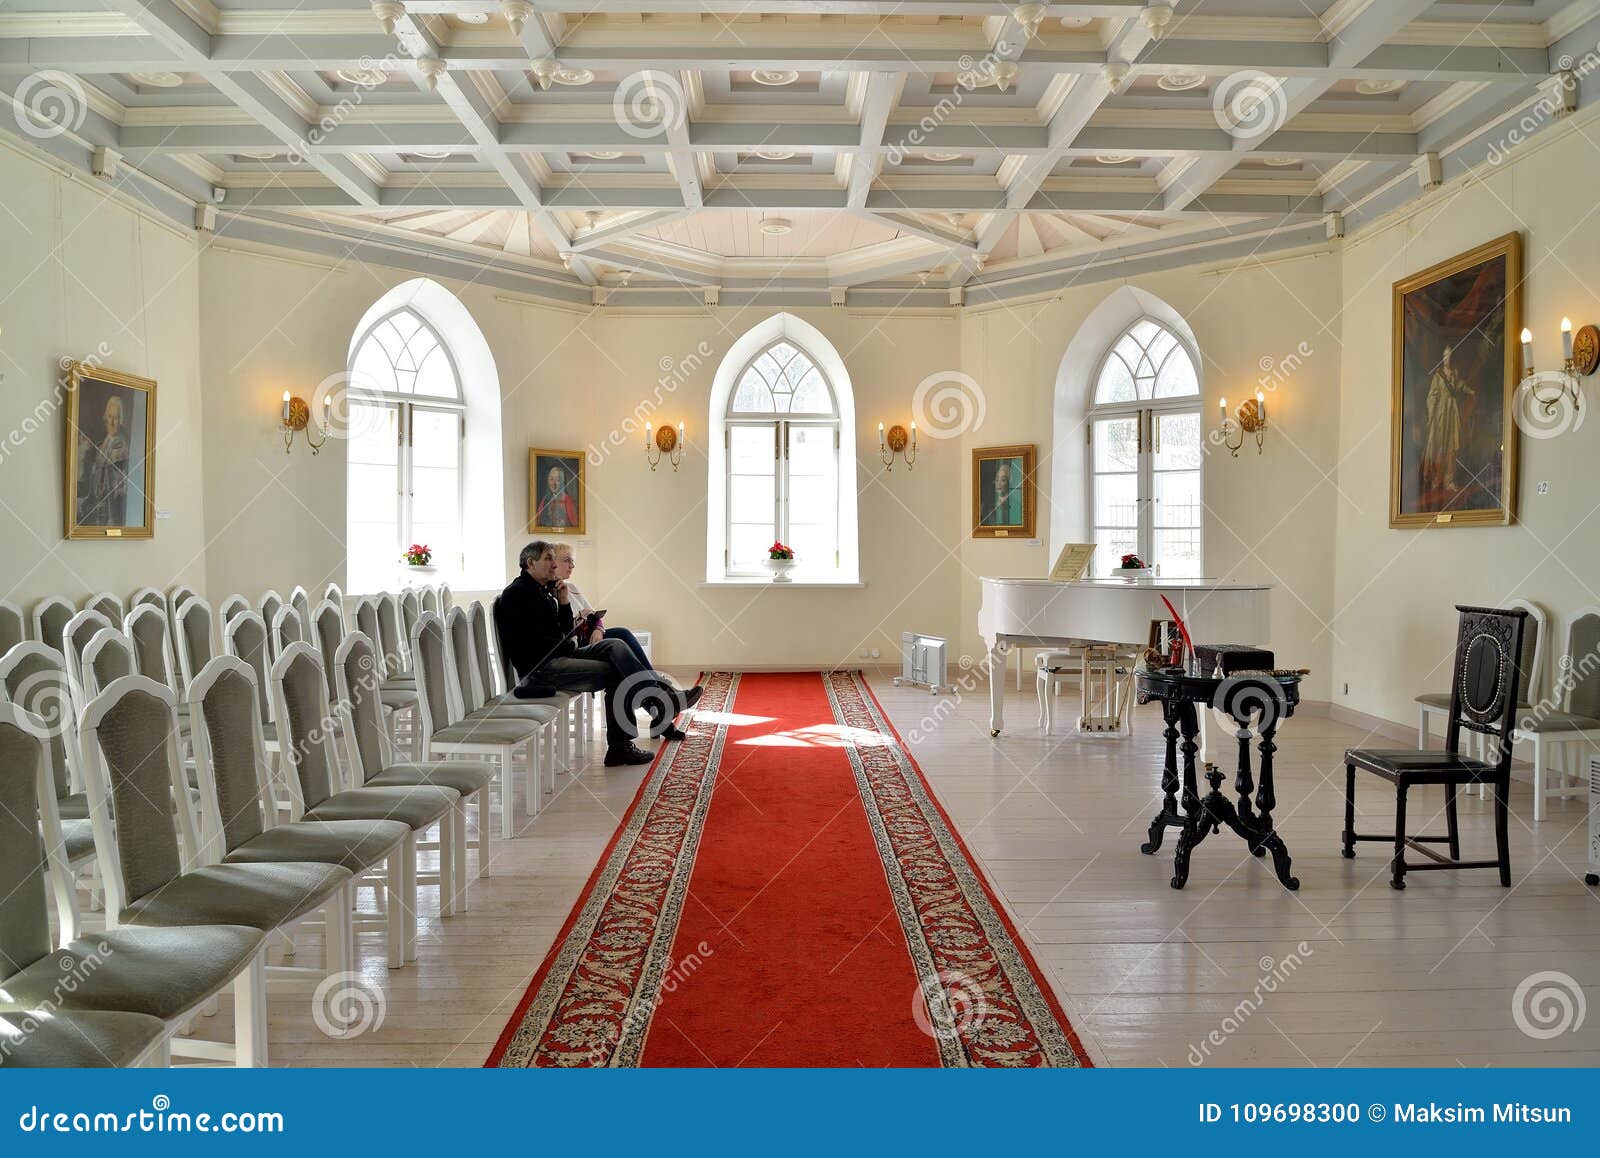 L'interno del corridoio bianco della cappella del priore Palac. St PIETROBURGO, RUSSIA - 3 MARZO 2017: L'interno del corridoio bianco della cappella del palazzo del priore in Gatcina